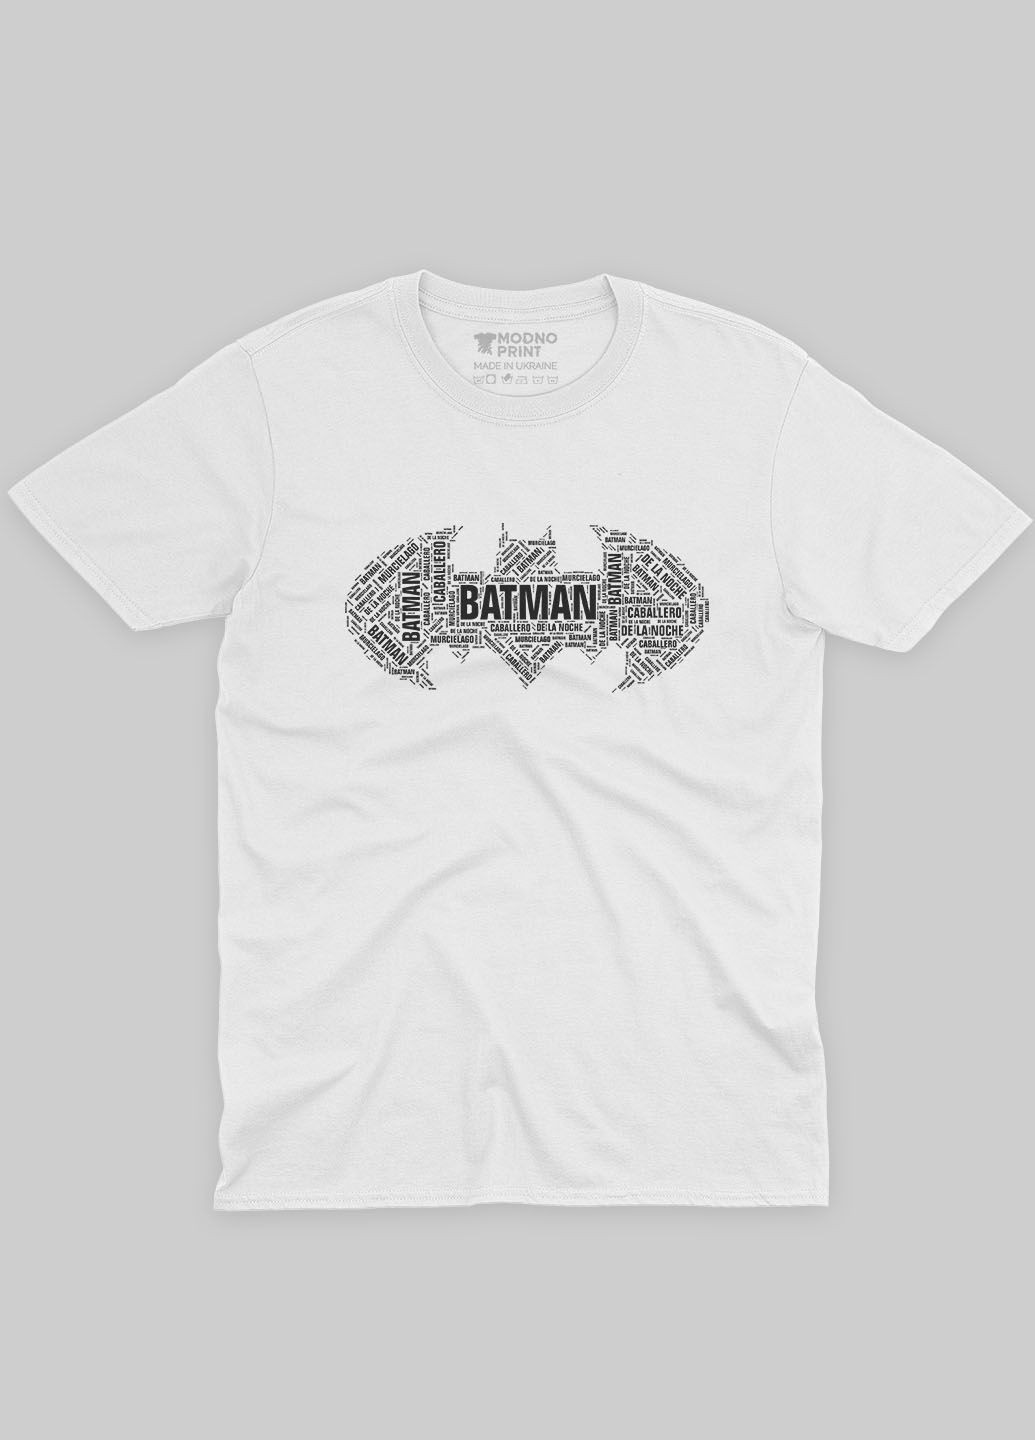 Біла демісезонна футболка для дівчинки з принтом супергероя - бетмен (ts001-1-whi-006-003-001-g) Modno